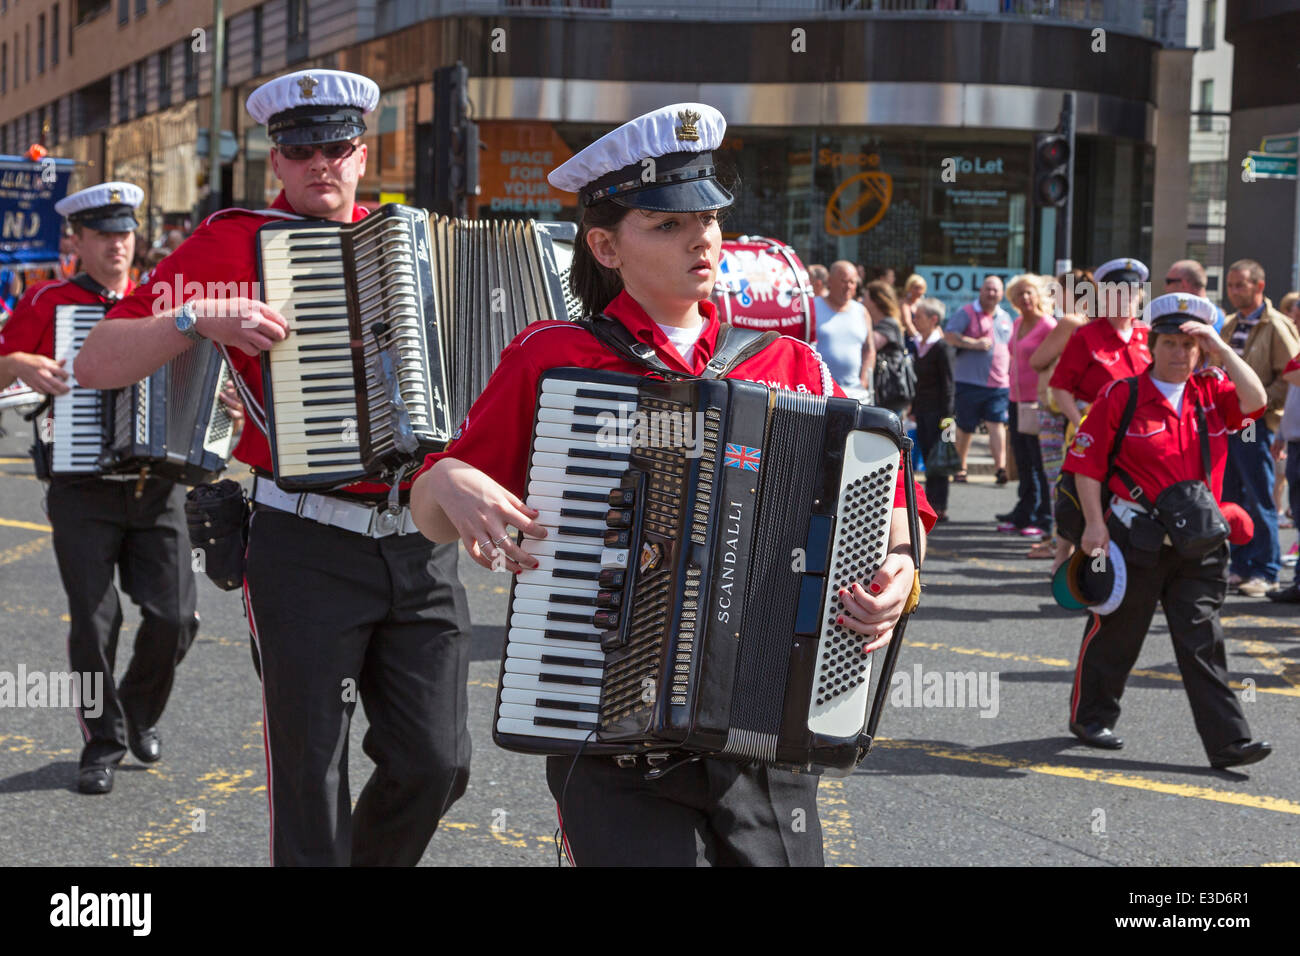 Accordion band parading at a Loyalist Orange Walk, Glasgow, Scotland UK Stock Photo